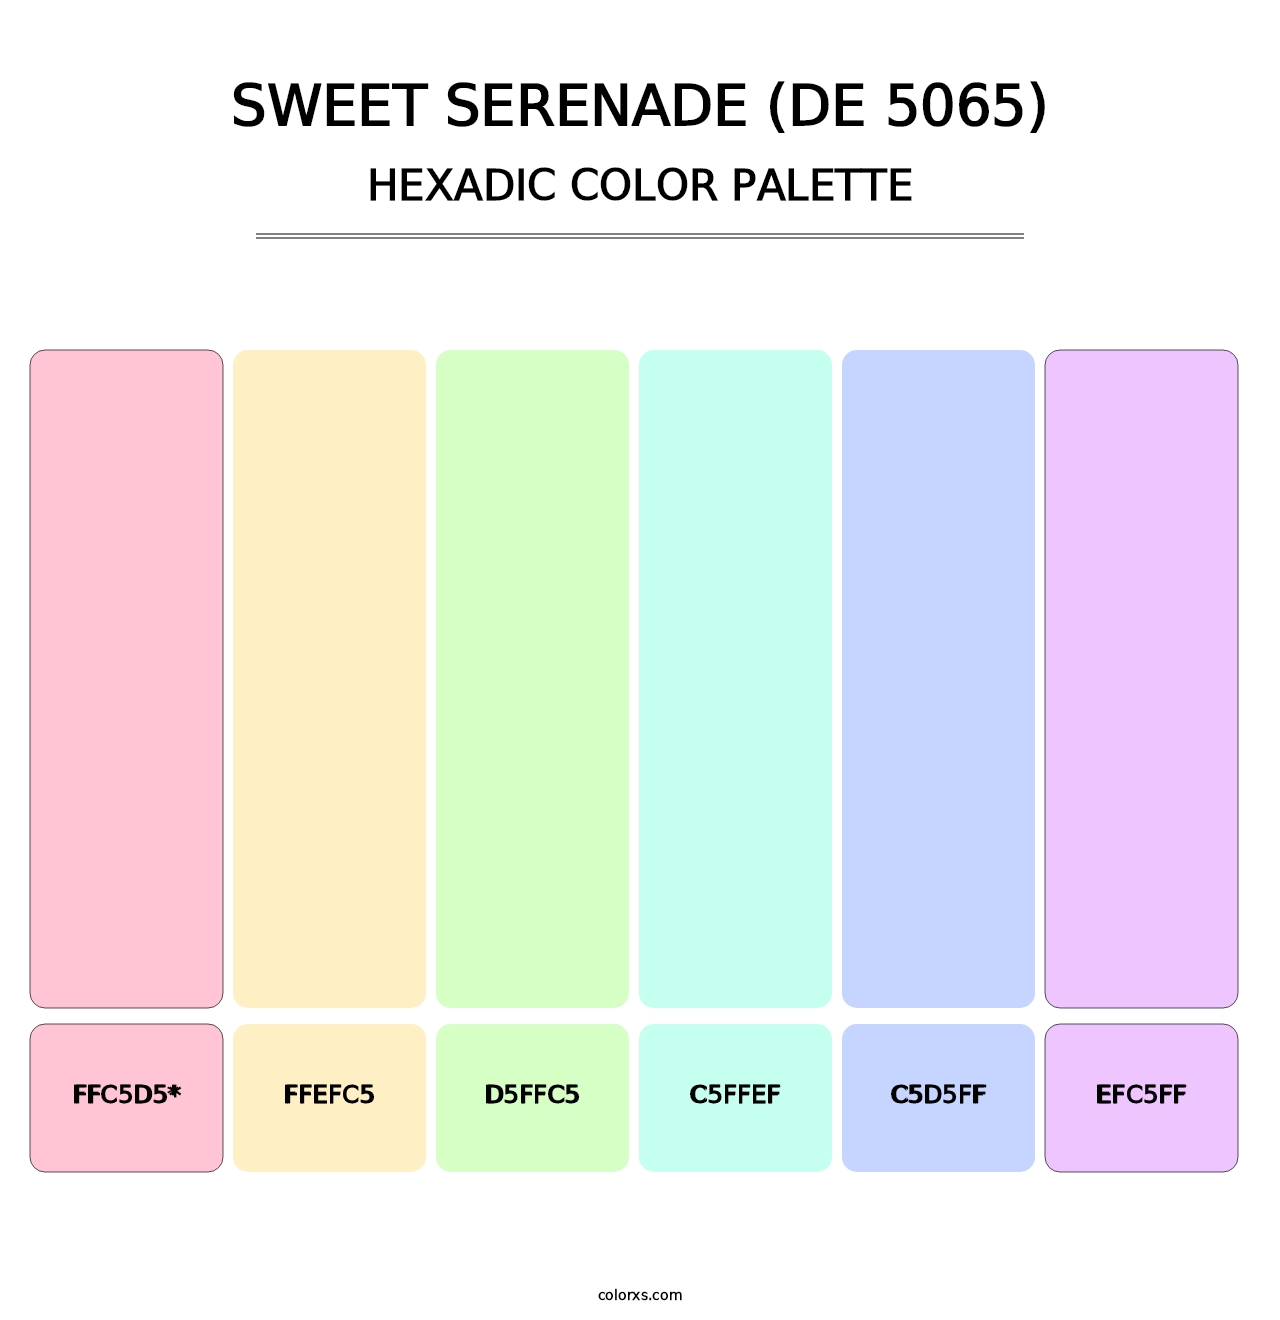 Sweet Serenade (DE 5065) - Hexadic Color Palette